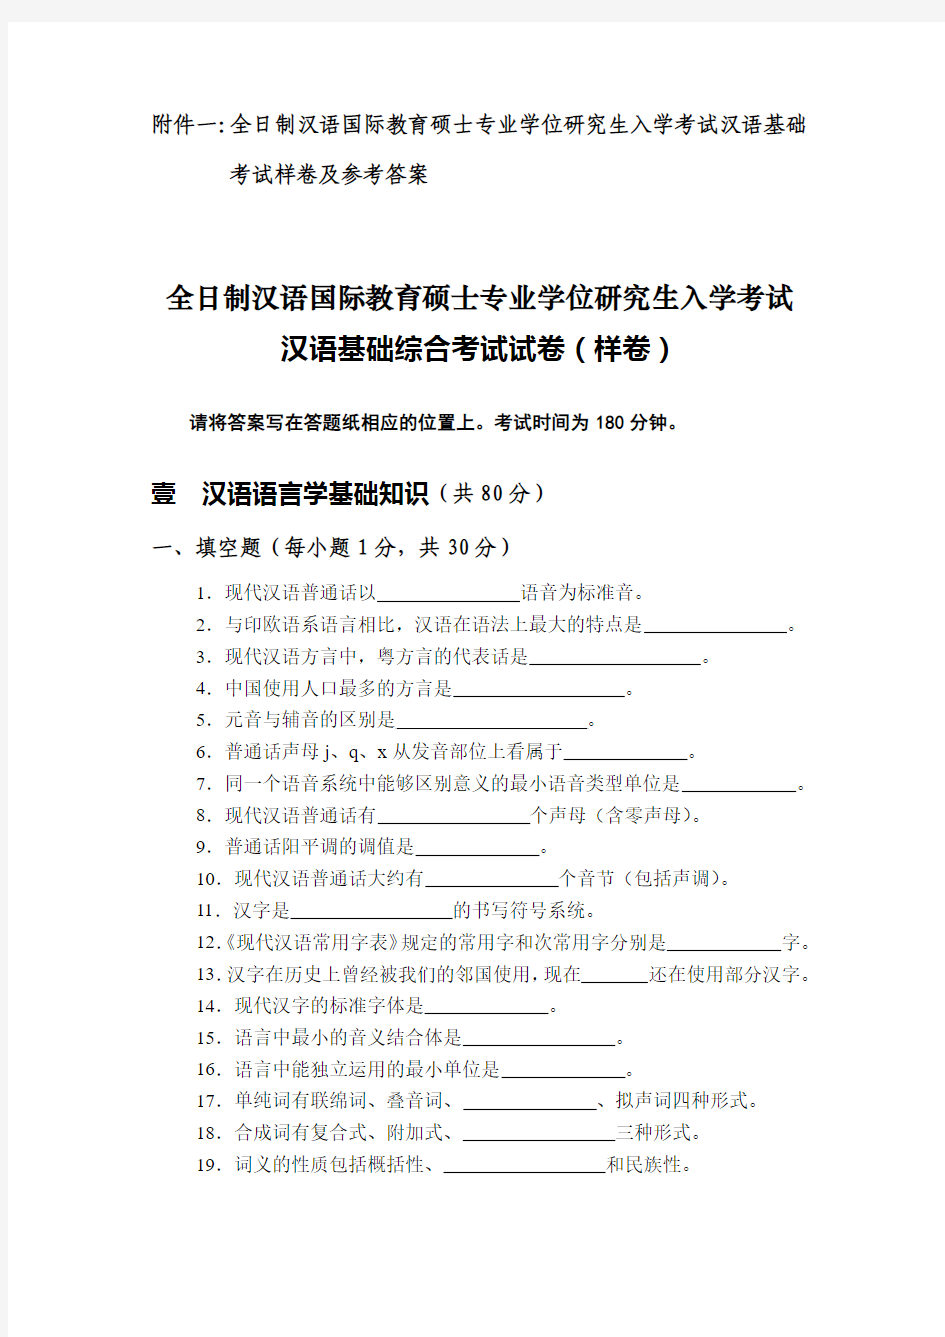 汉语基础综合考试试卷(样卷及答案)